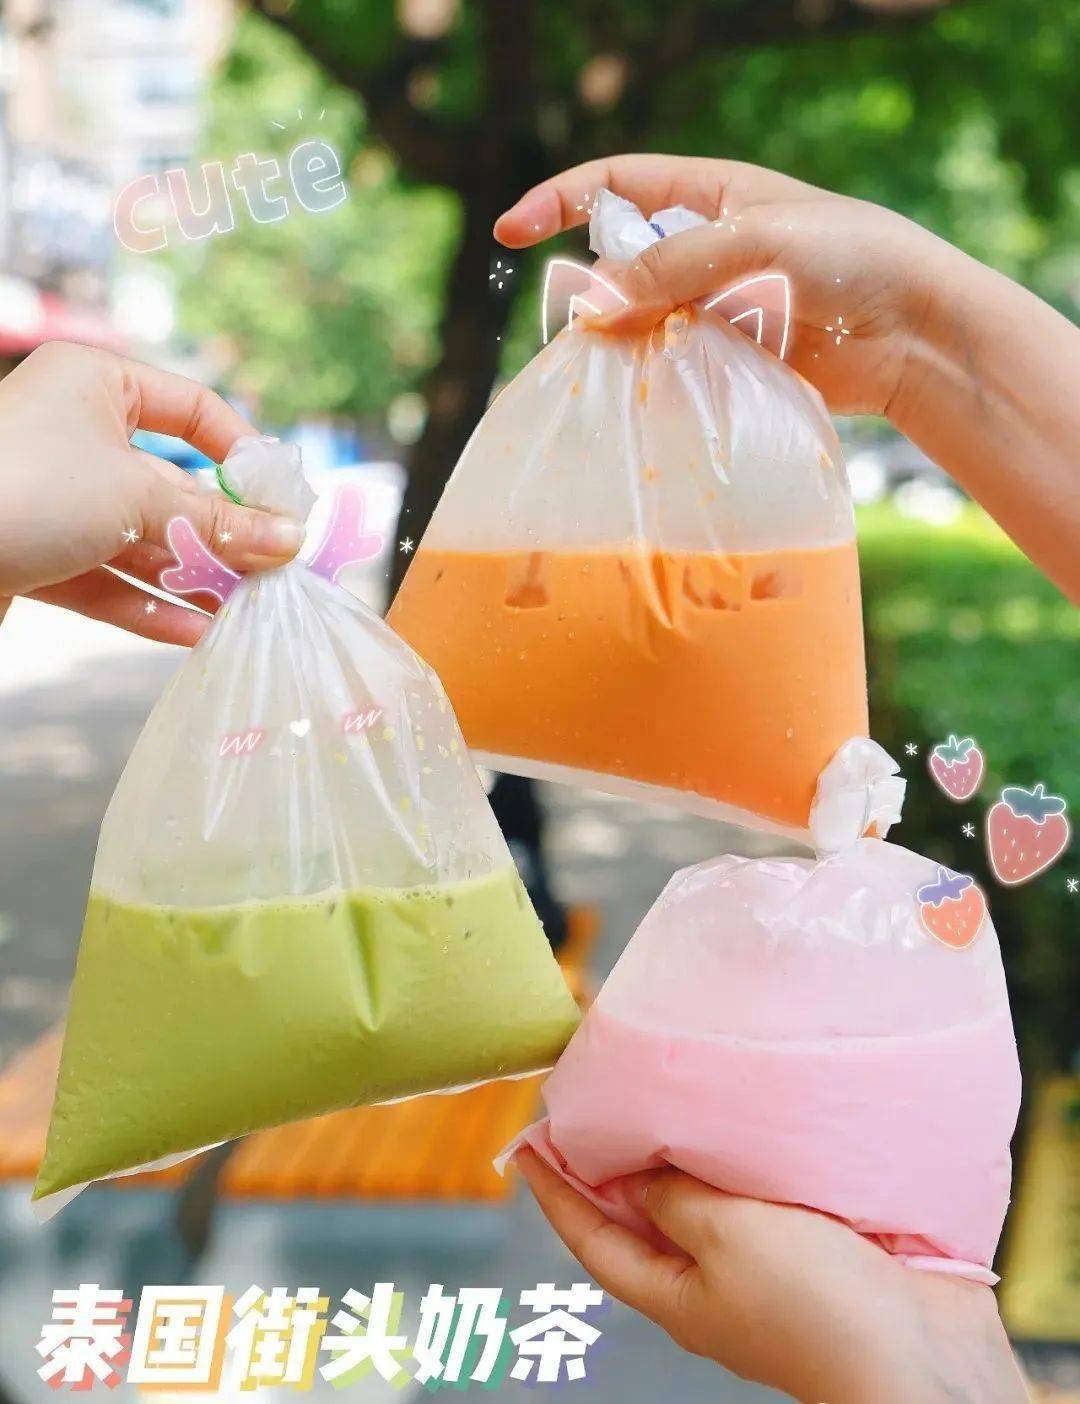 三款泰式奶茶的经典喝法,走过路过不能错过: 红茶,绿茶和粉红奶!